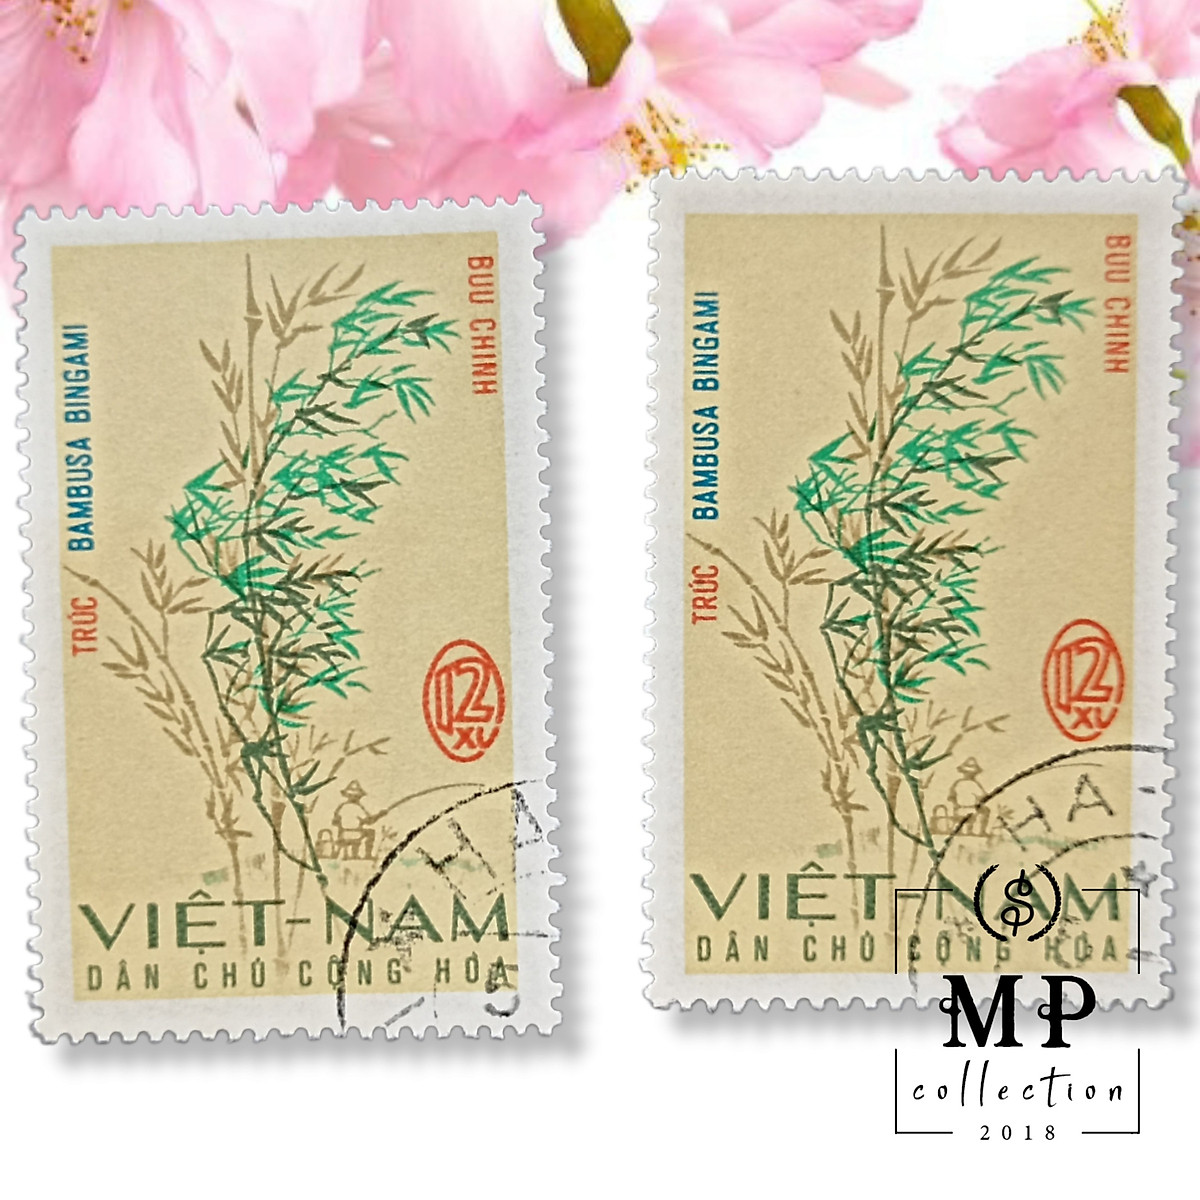 [89]Bộ 6 tem cây tre CTO Việt Nam Dân chủ cộng Hoà